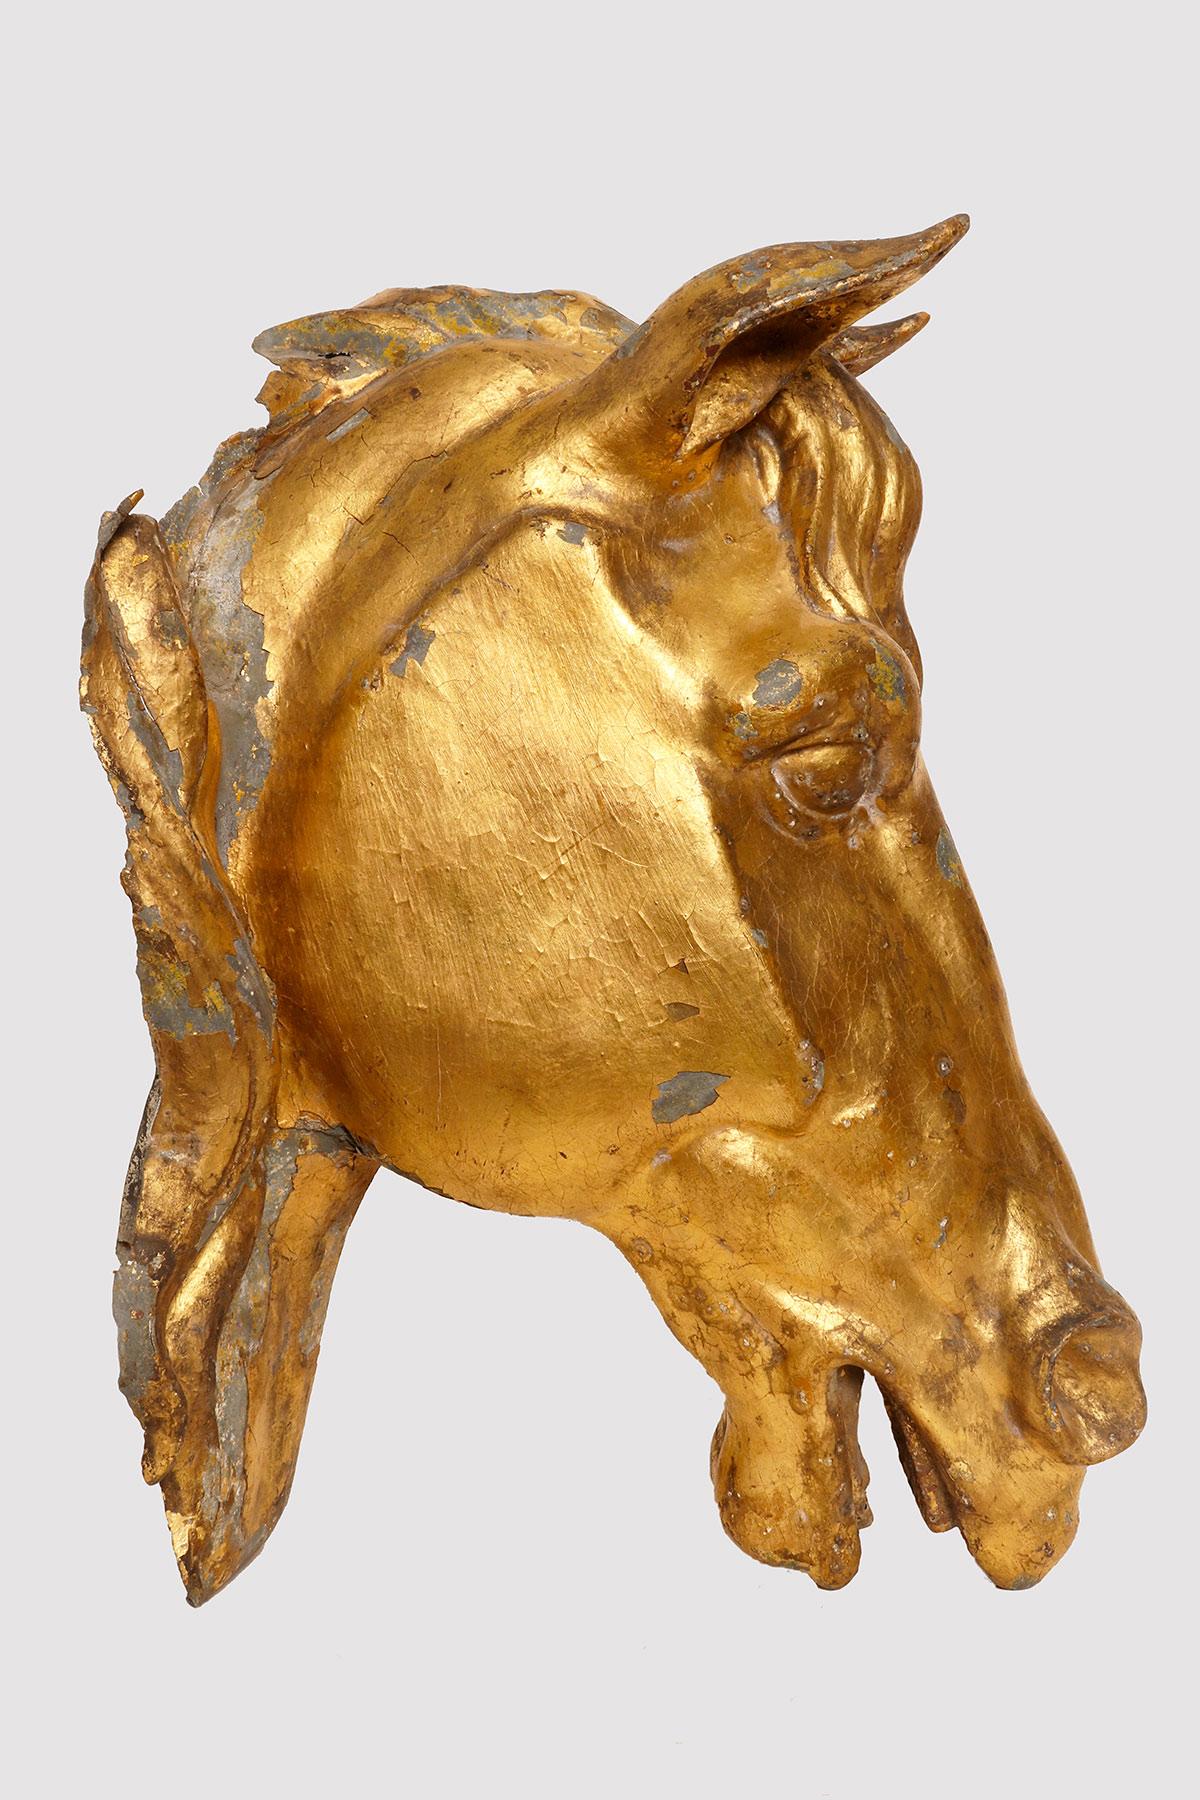 Skulptur aus vergoldetem Zinkblech mit Blattgold, die einen Pferdekopf darstellt. Die Skulptur ist vollständig geprägt und zeigt zwei Mähnenflügel. Der Pferdekopf war ein dekorativer Teil eines englischen Landhauses, vielleicht besser als der Stall,